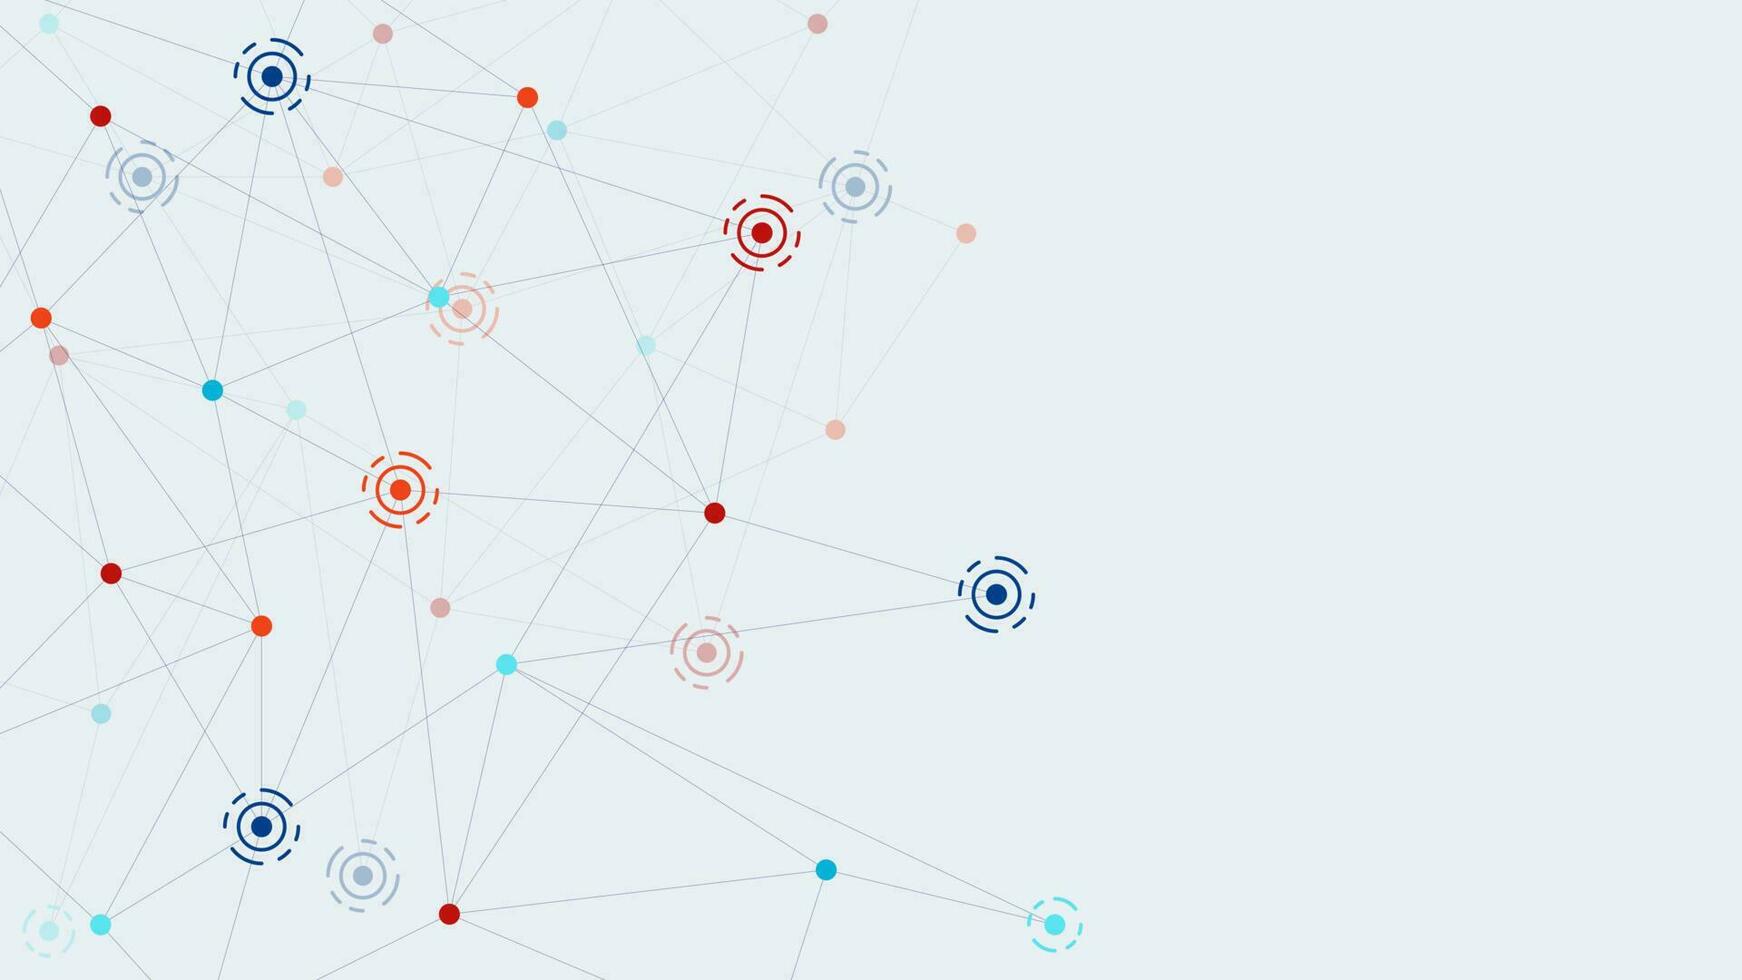 Netzwerk Verbindung Konzept mit in Verbindung gebracht Punkte und Linien. groß Daten Visualisierung und Kommunikation Technologie Hintergrund Design. Vektor Illustration.